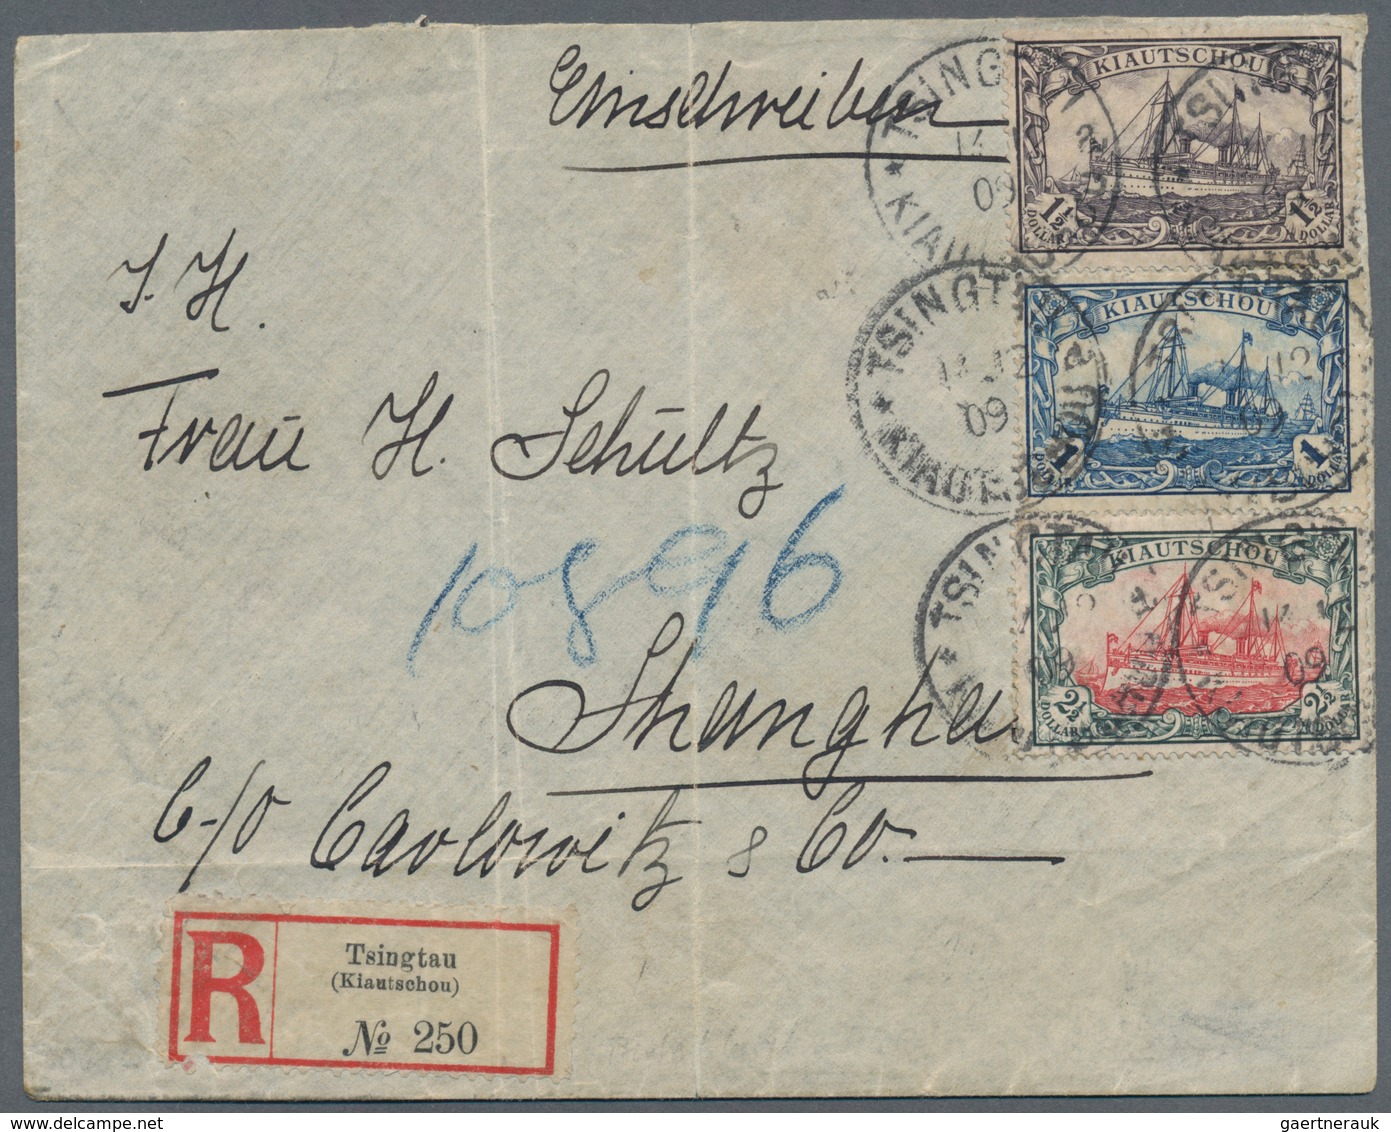 Deutsche Kolonien - Kiautschou: 1905, 1 $, 1 1/2 $ Und 2 1/2 $ Kaiseryacht Mit Wasserzeichen Auf übe - Kiautchou